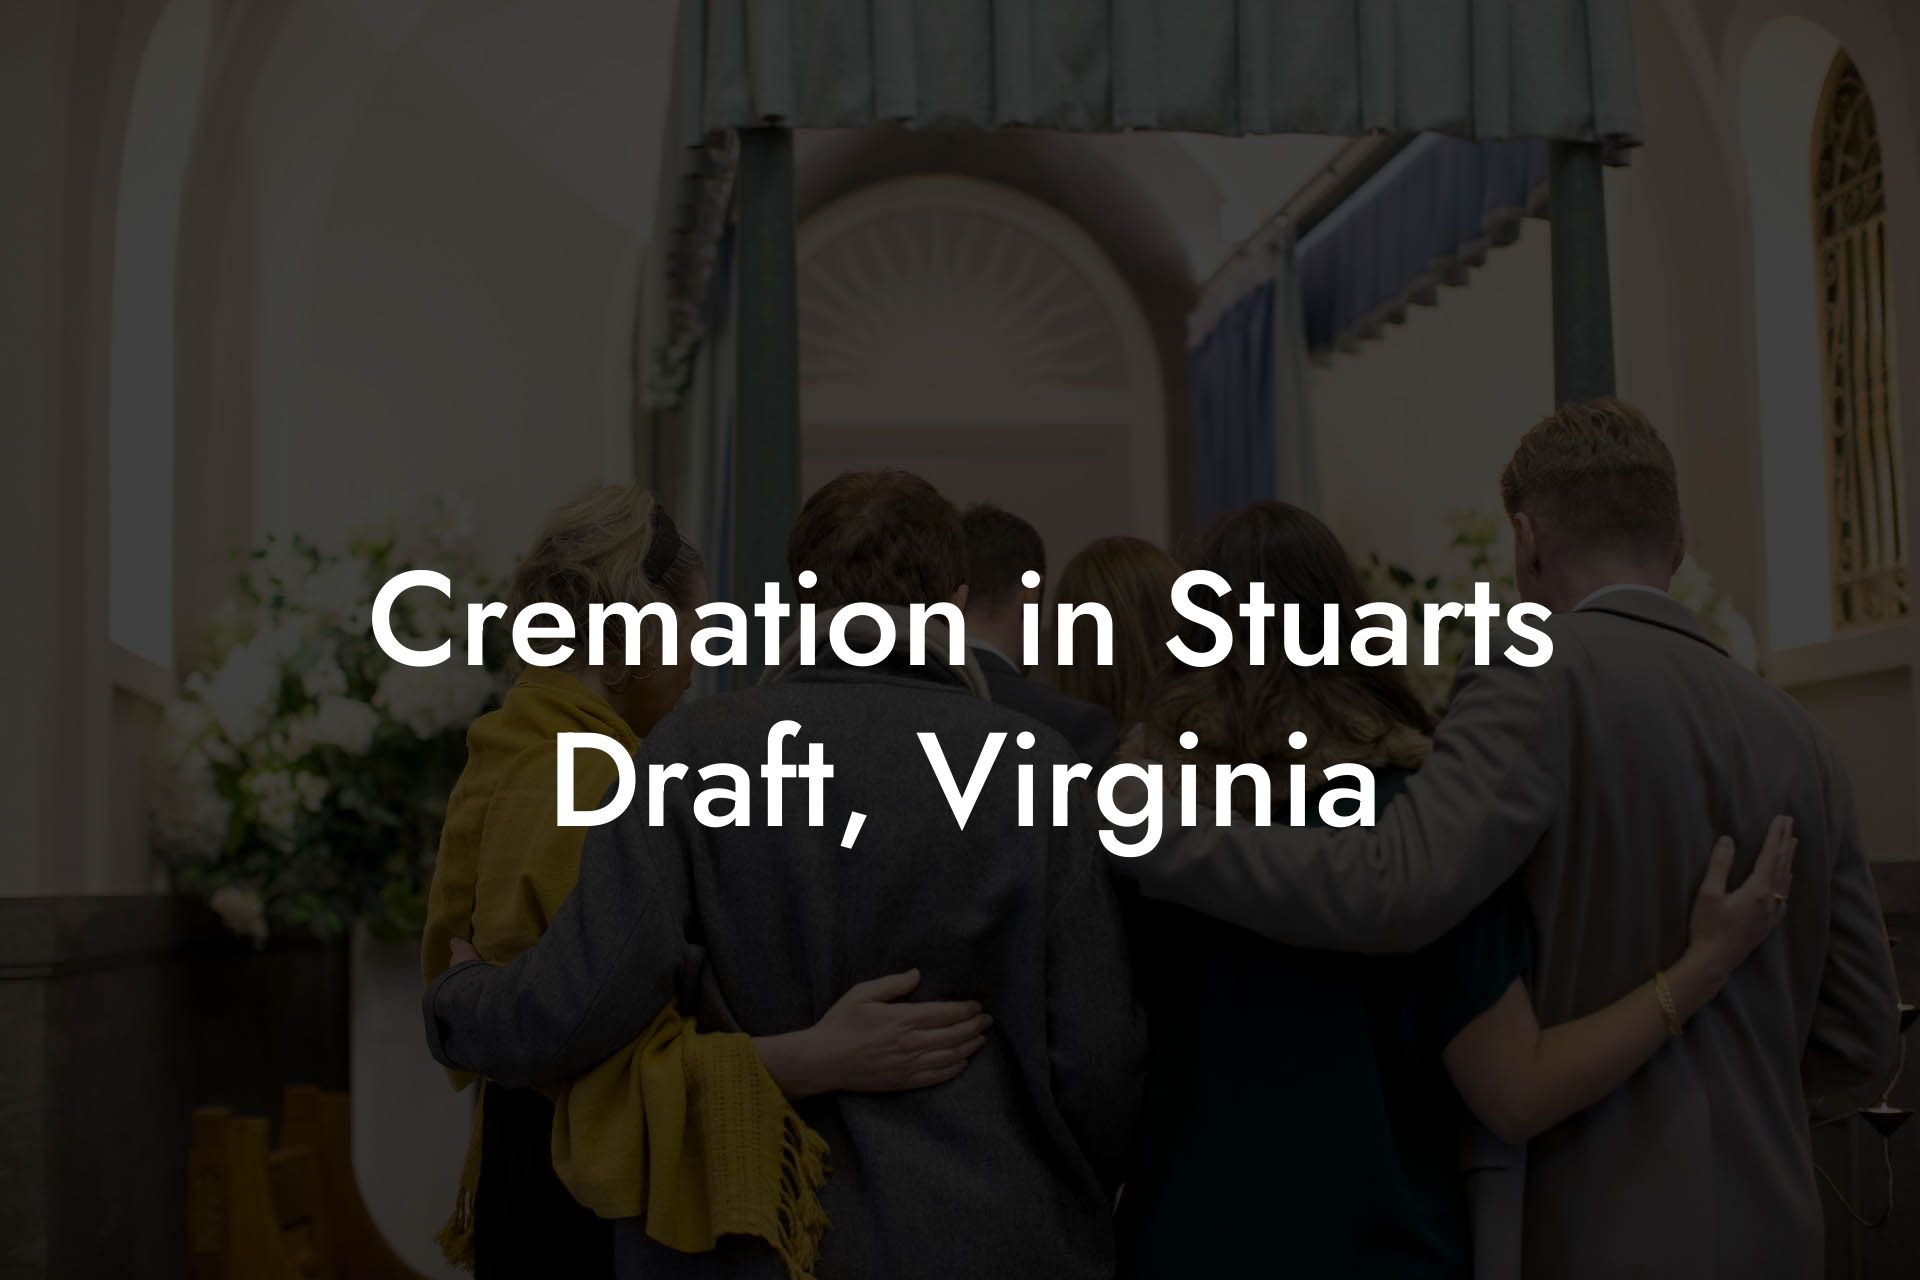 Cremation in Stuarts Draft, Virginia